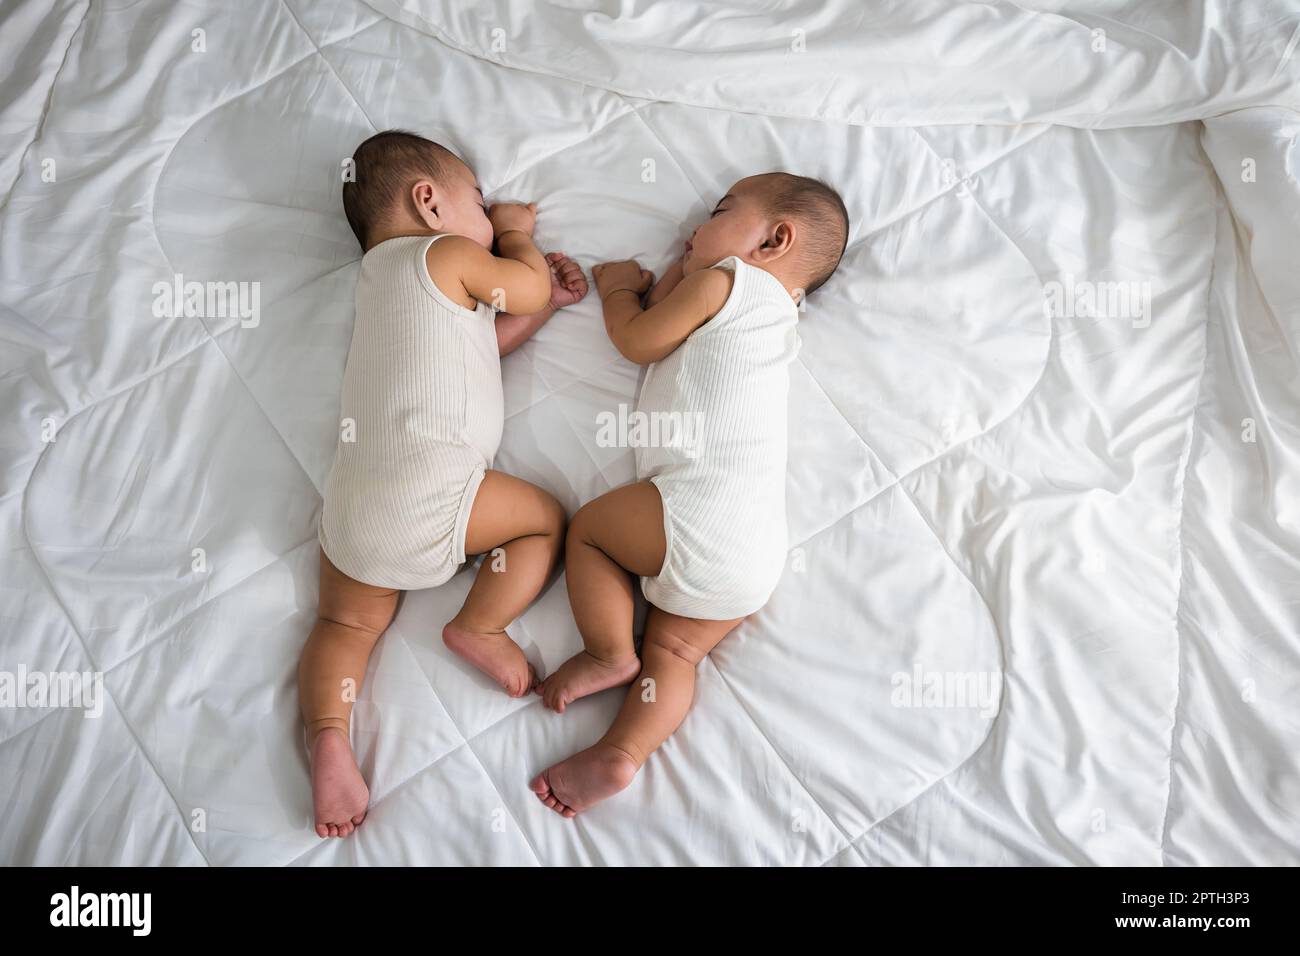 Glückliche Kindheit, schlafen neugeborenen eineiigen Jungen Zwillinge auf  dem Bett im Schlafzimmer, asiatische zwei entzückende Zwillinge Jungen,  Familie Menschen Kleinkind Stockfotografie - Alamy